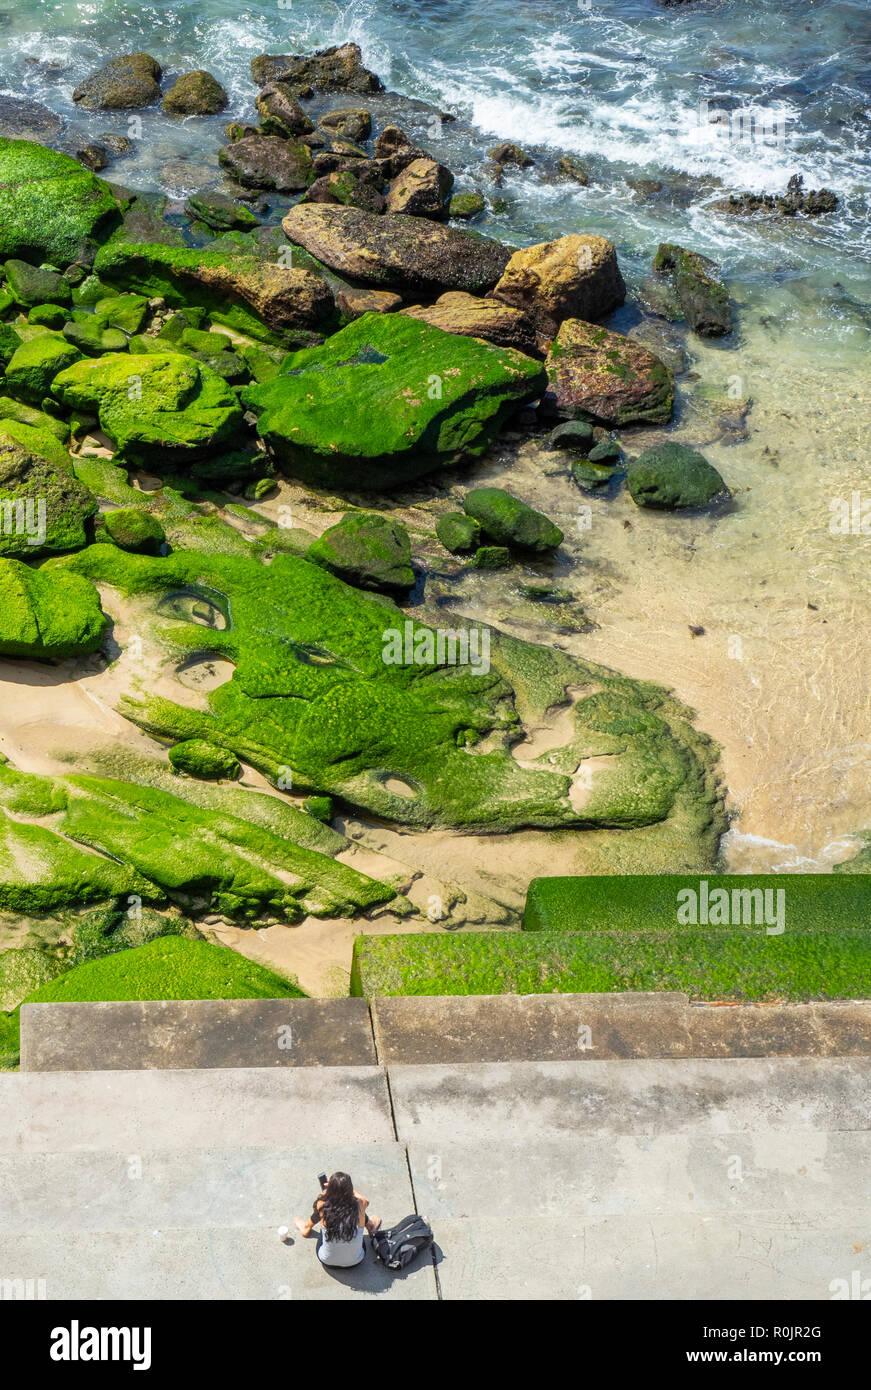 Mujer sentada por rocas cubiertas de algas en el extremo sur de la playa de Bondi, Sydney, NSW, Australia. Foto de stock